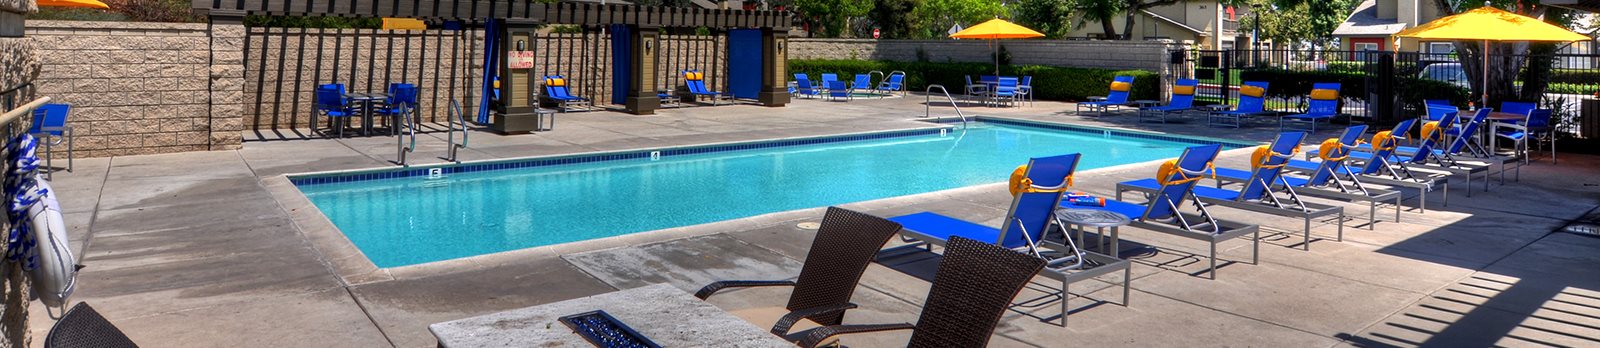 Invigorating Swimming Pool at Promenade Terrace, Corona, CA, 92879